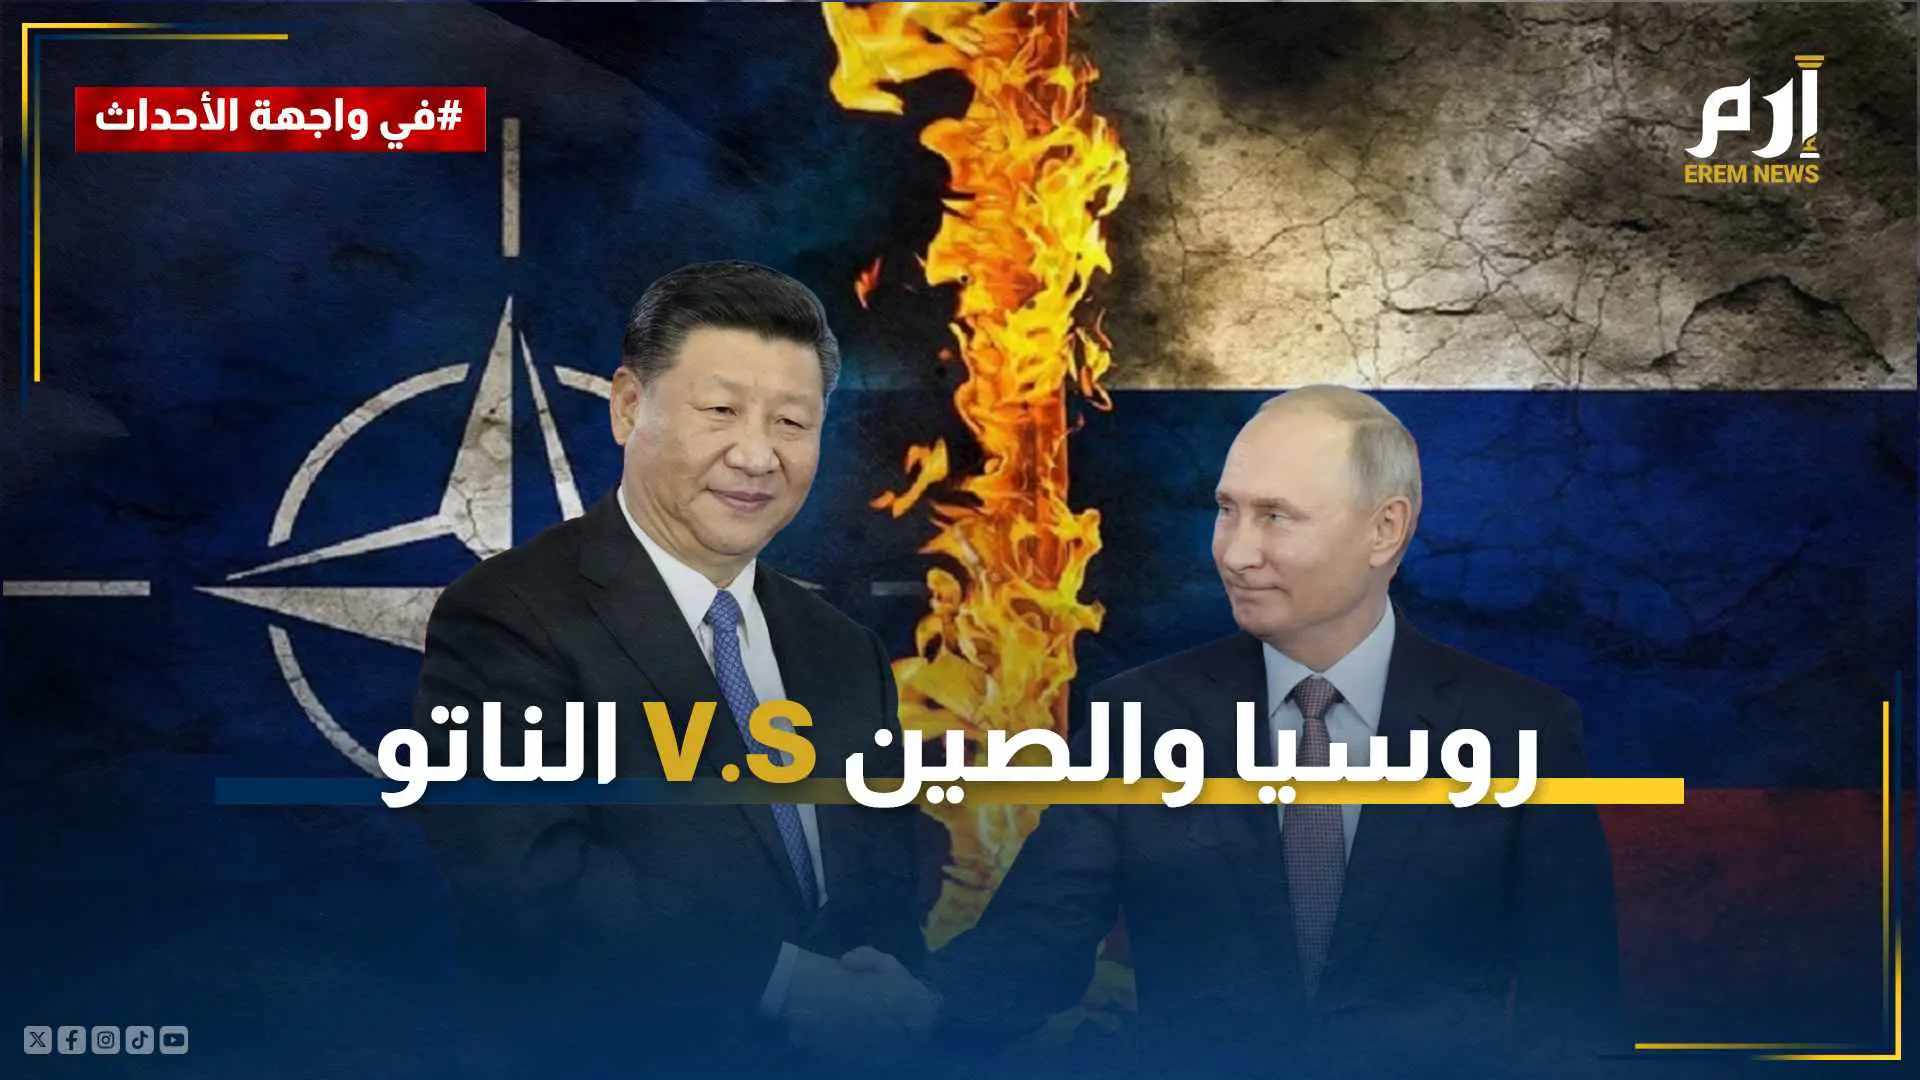 مع بدء تدريبات مشتركة.. هل تستعد روسيا والصين لحرب محتملة ضد الناتو؟